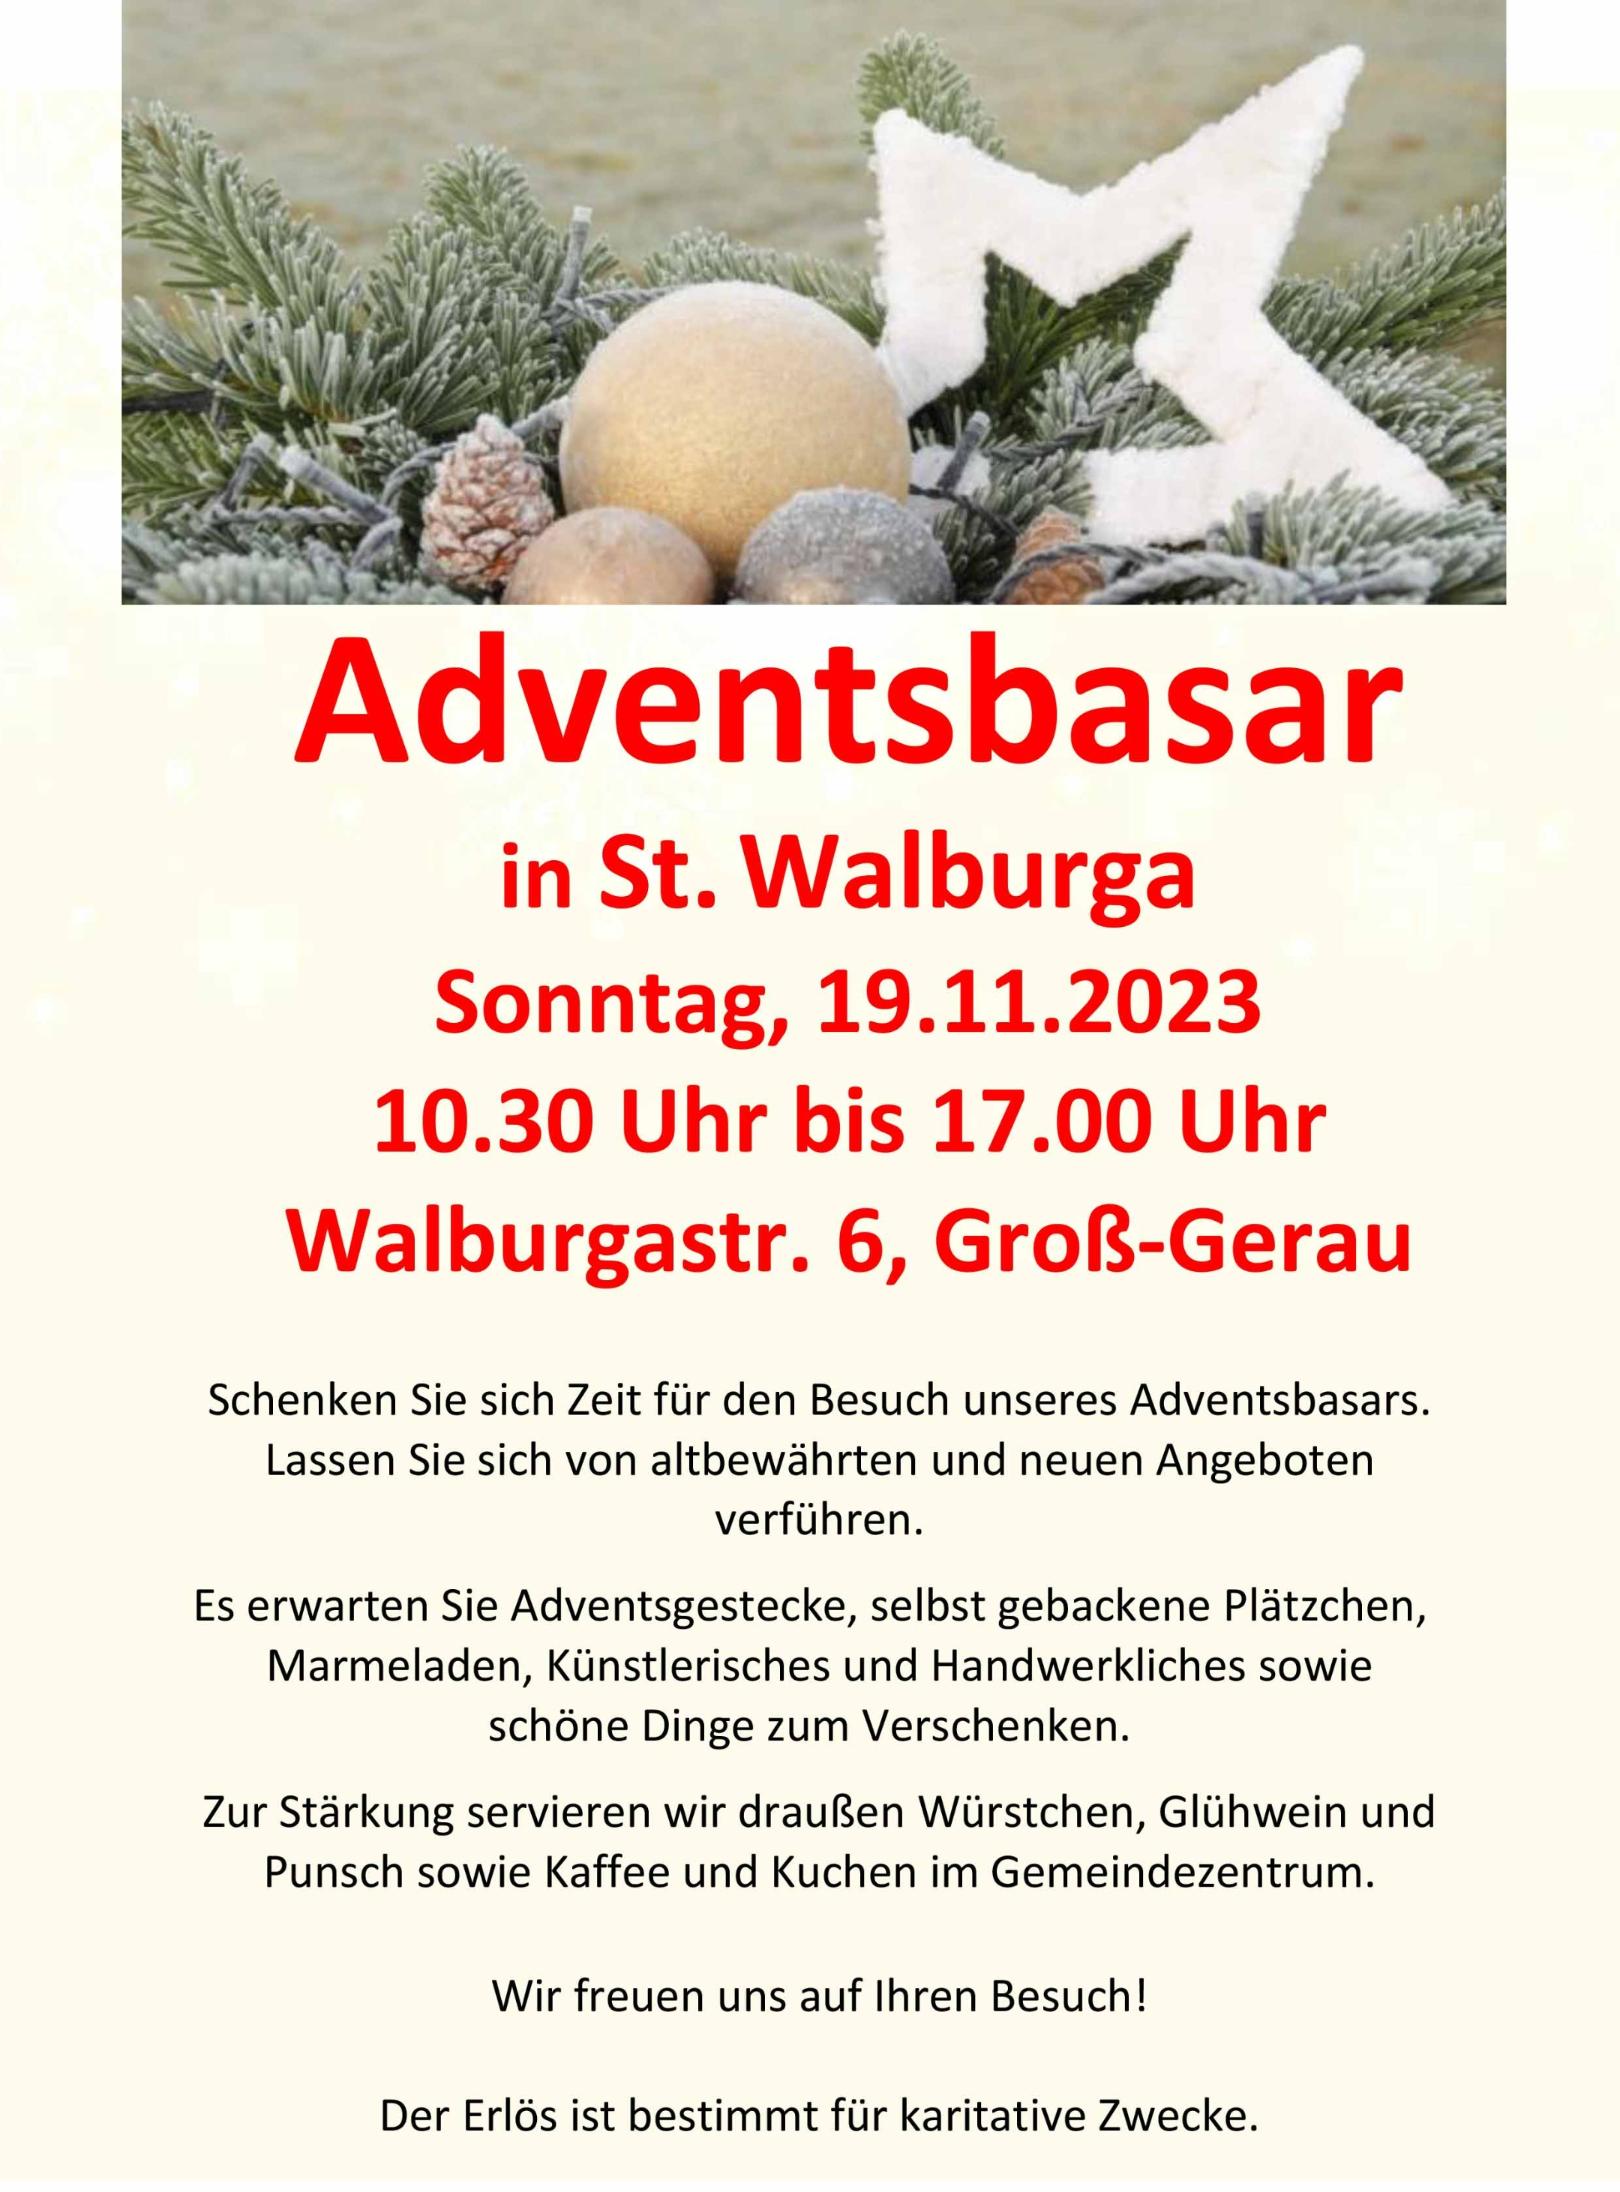 Plakat Adventsbasar 19.11.2023 Version 15.10.23 (c) Pfarrei St. Walburga